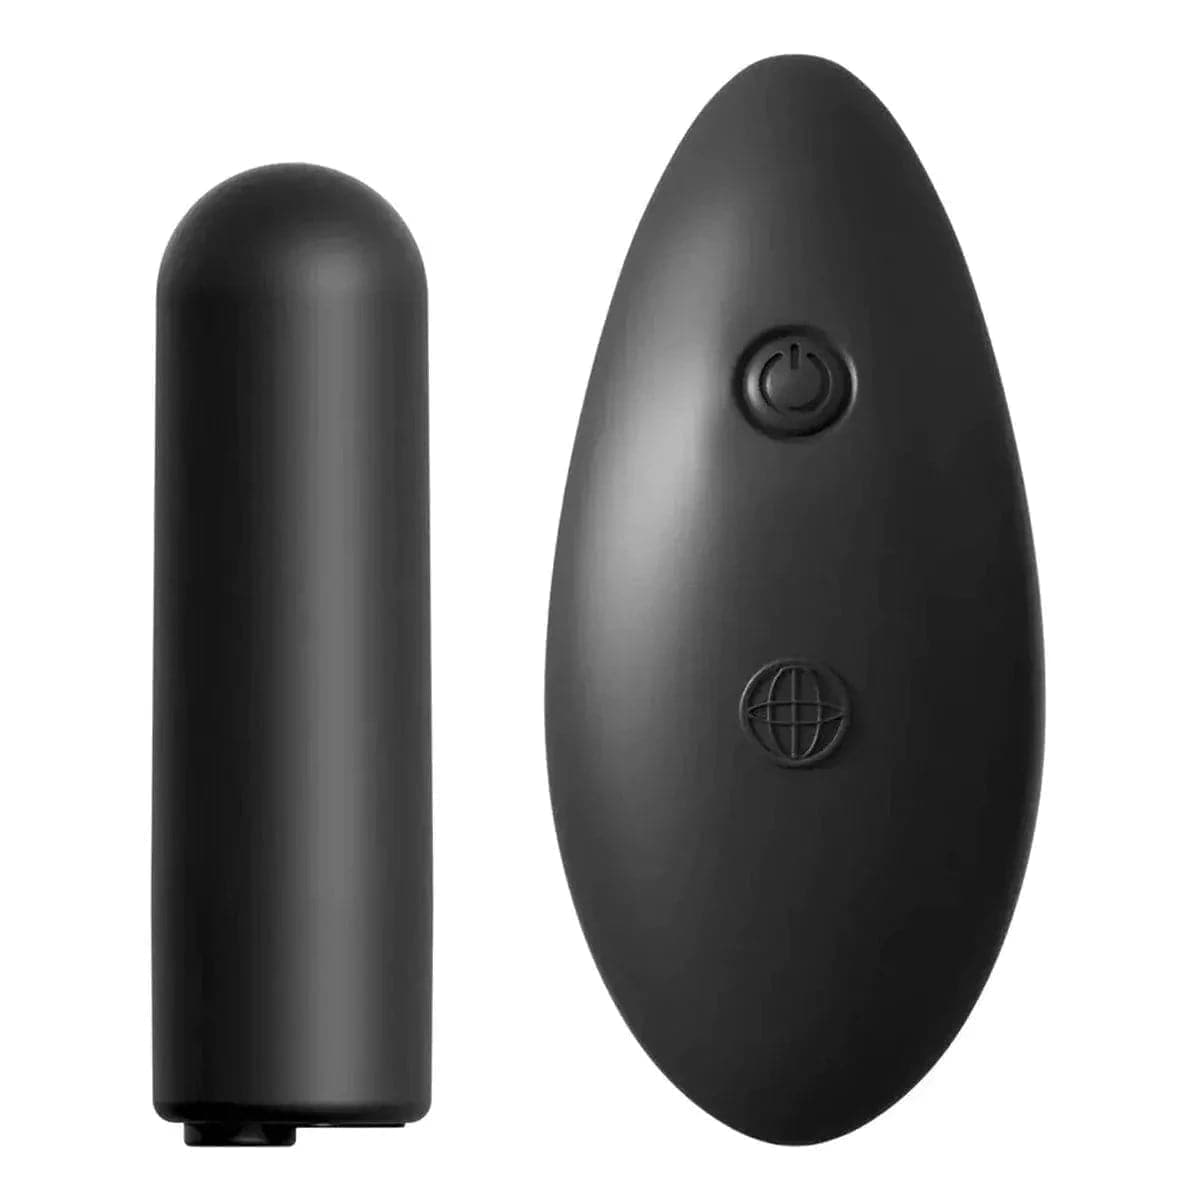 Cueca Vibratória Date Night USB Wireless - 10 Modos de Vibração, Tamanho S ao XL - Pérola SexShop